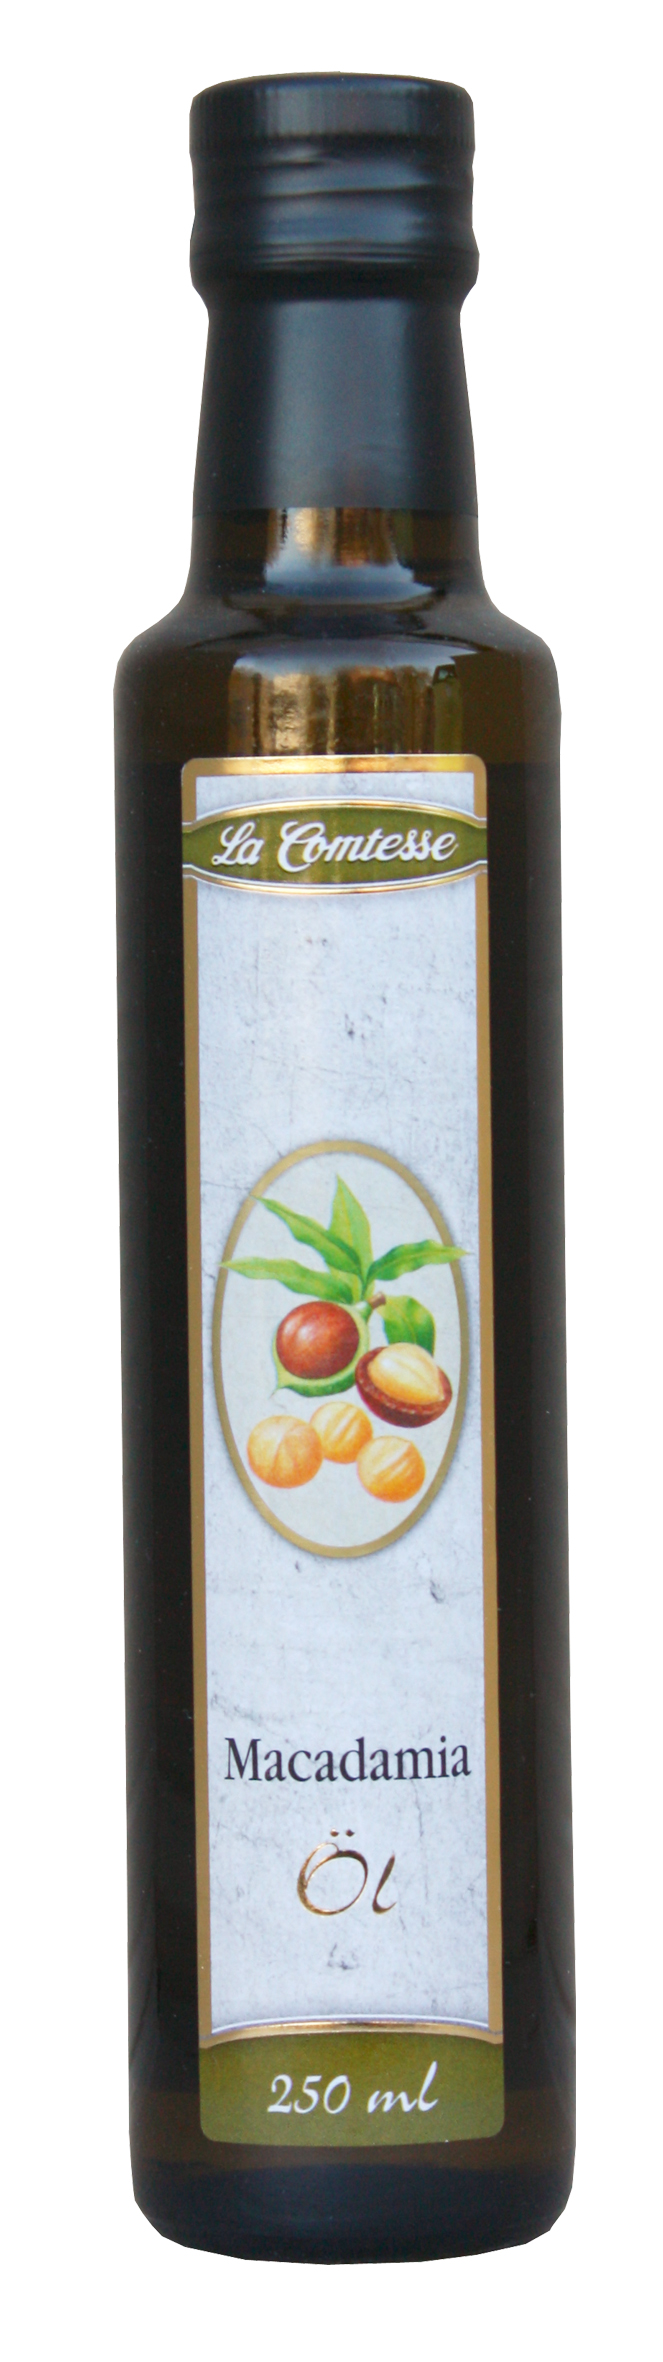 Macadamia-Nuss Öl, 250 ml